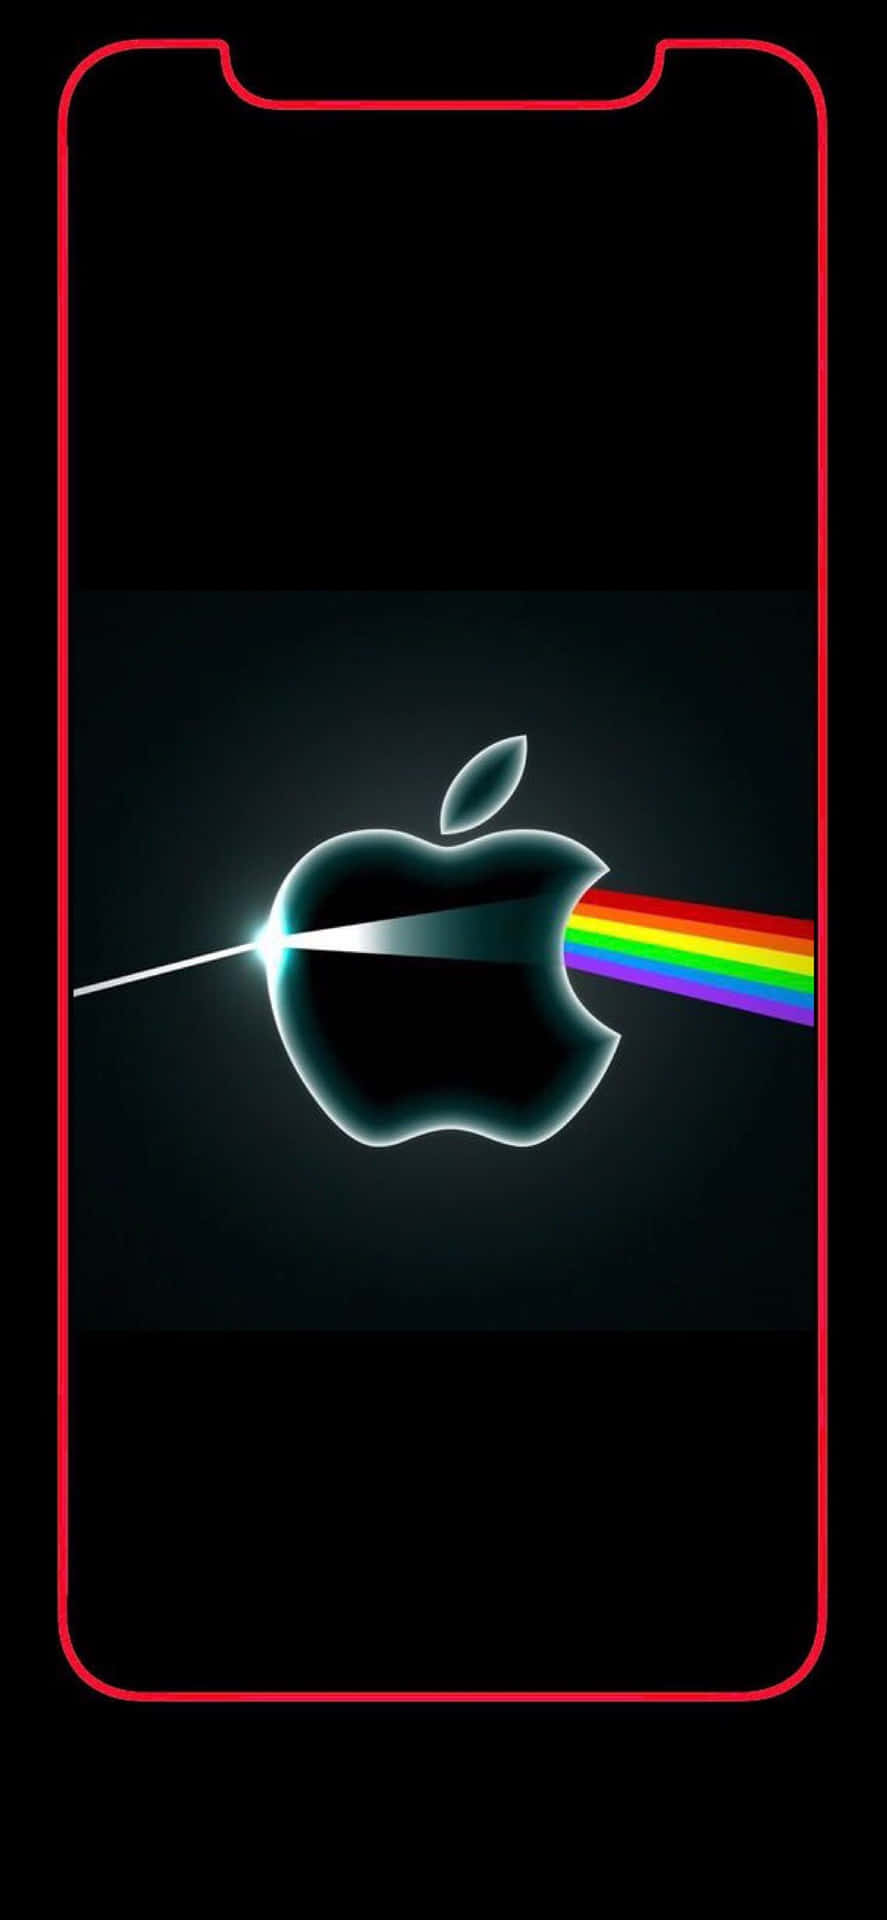 Gráficade Un Logotipo De Apple En La Parte Trasera De Un Iphone X. Fondo de pantalla